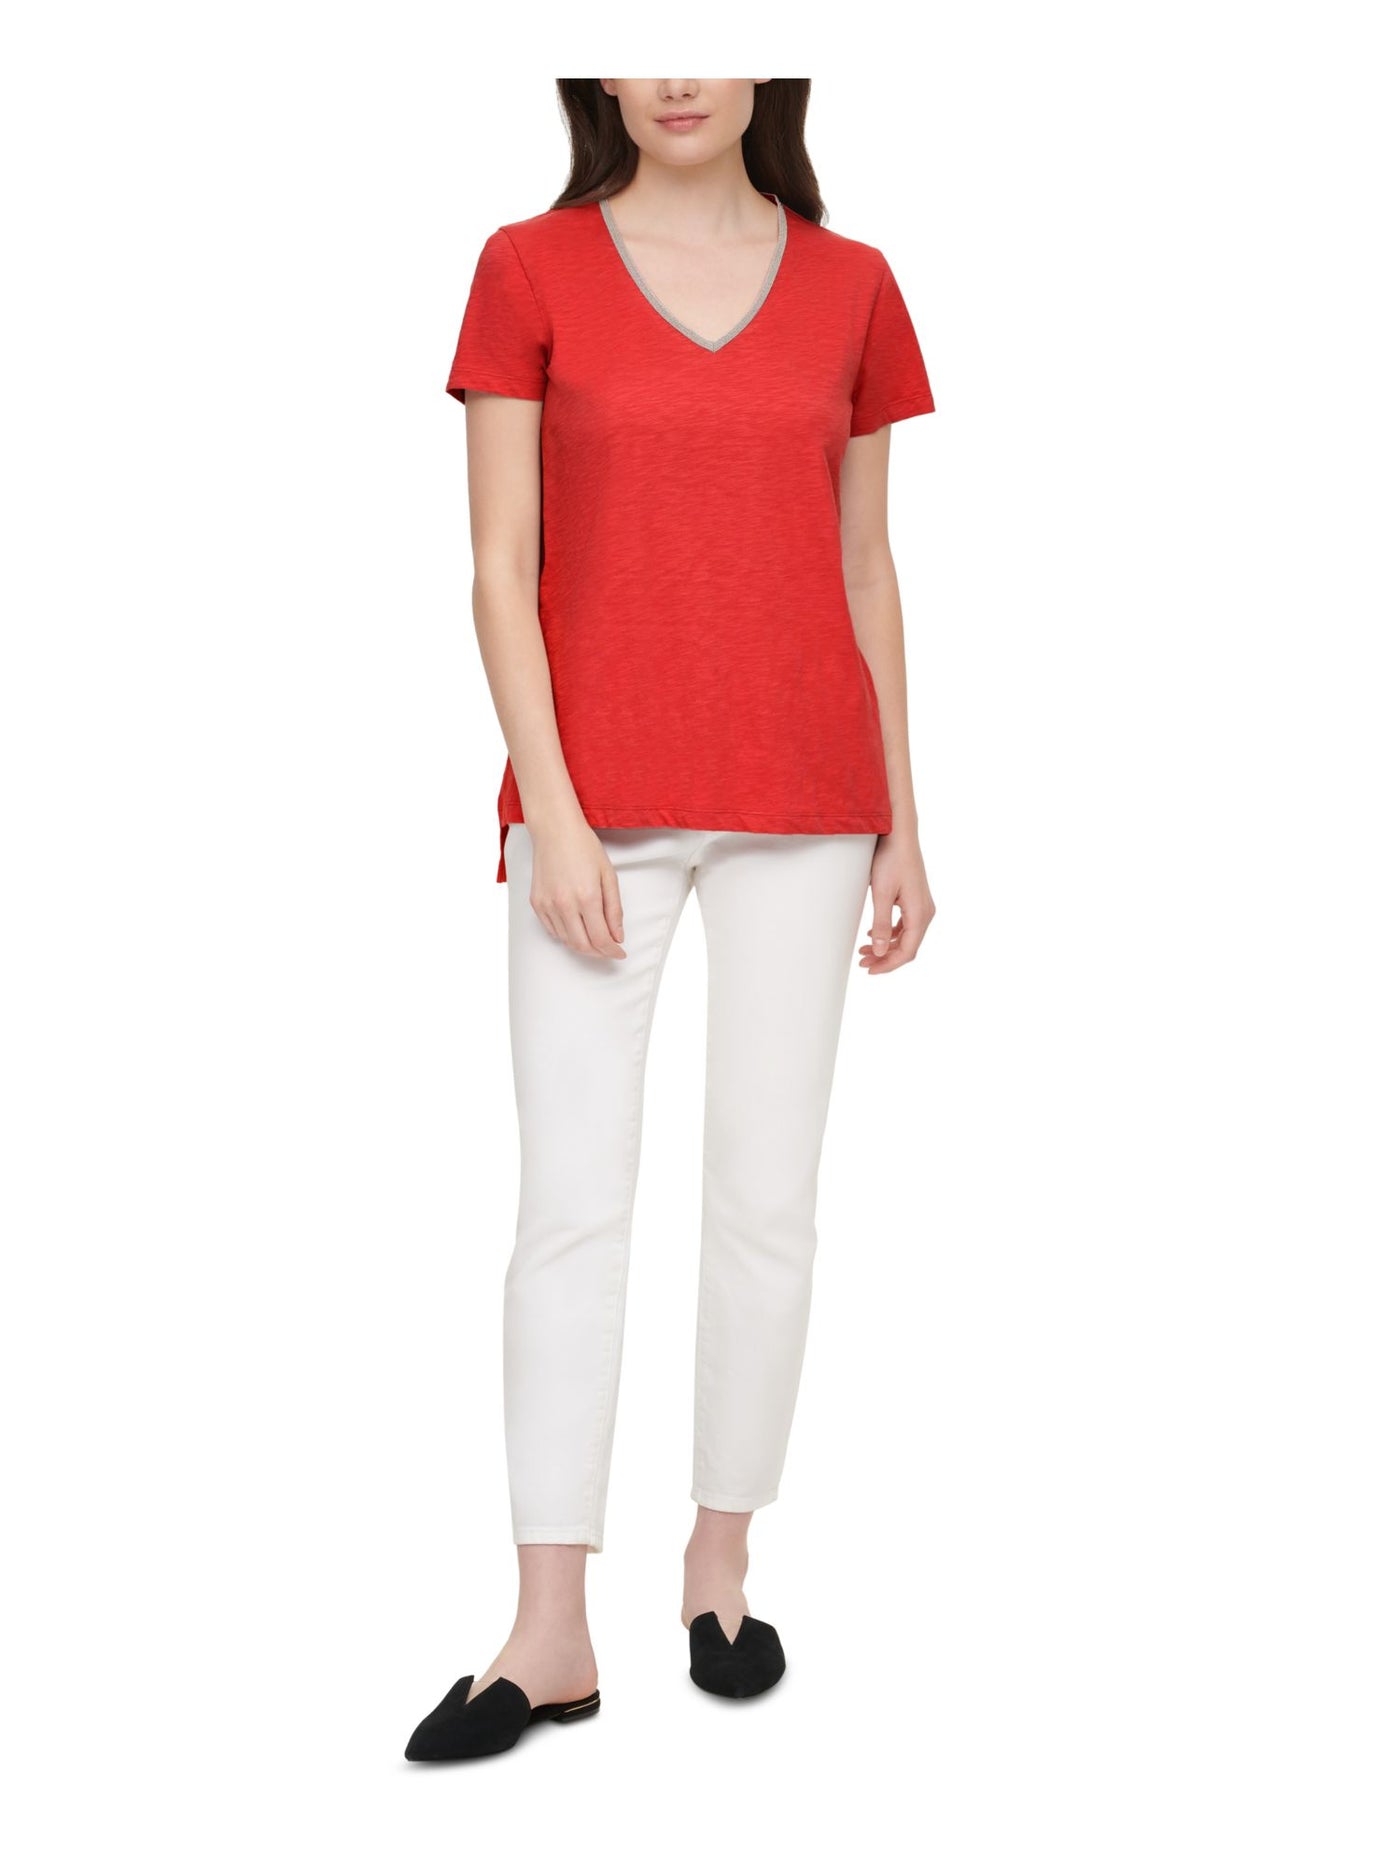 DKNY JEANS Womens Red Embellished Short Sleeve V Neck T-Shirt L